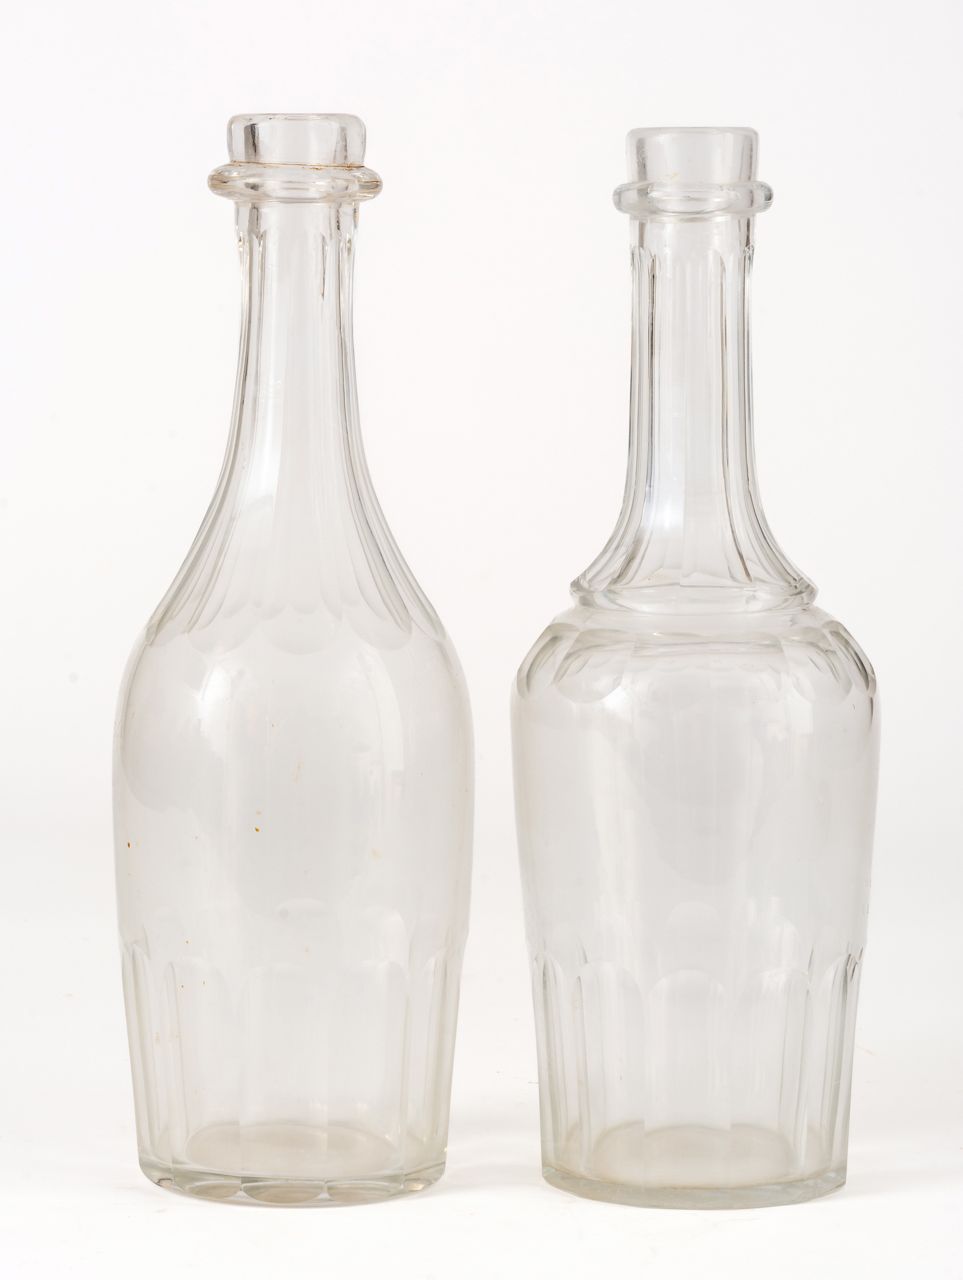 WASSER UND WEIN-FLASCHE Italien, Glas, wohl um 1950

H: 27 cm



Zustand: eine F&hellip;